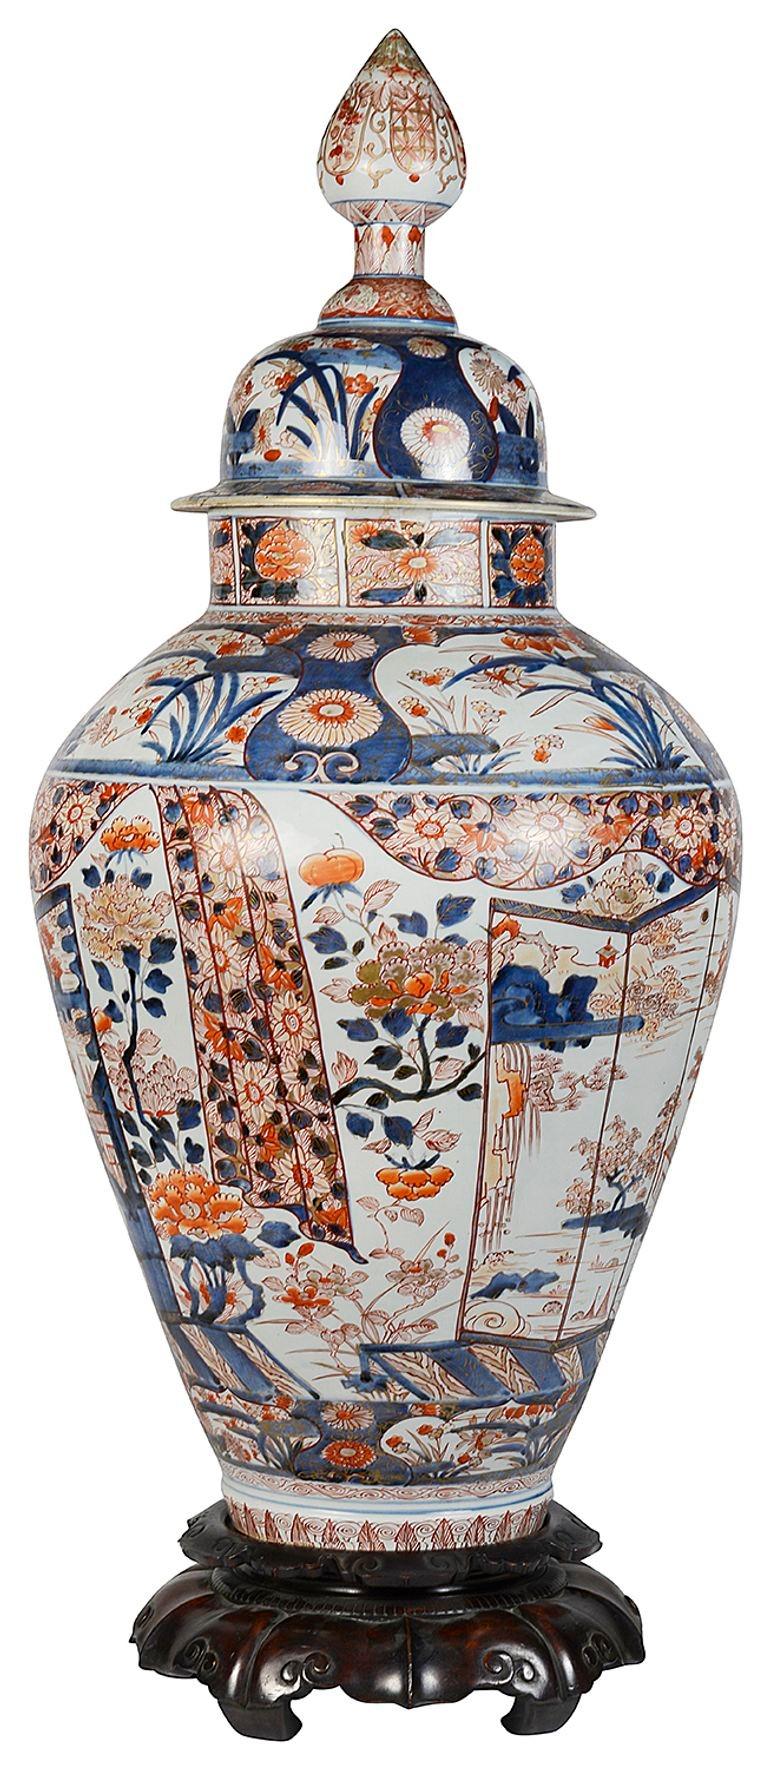 Ce magnifique grand vase japonais à couvercle Arita Imari du 18e siècle est posé sur un socle. Les bordures sont ornées d'un motif classique et d'un décor de feuillage, des panneaux peints à la main sont insérés pour présenter des plantes et des